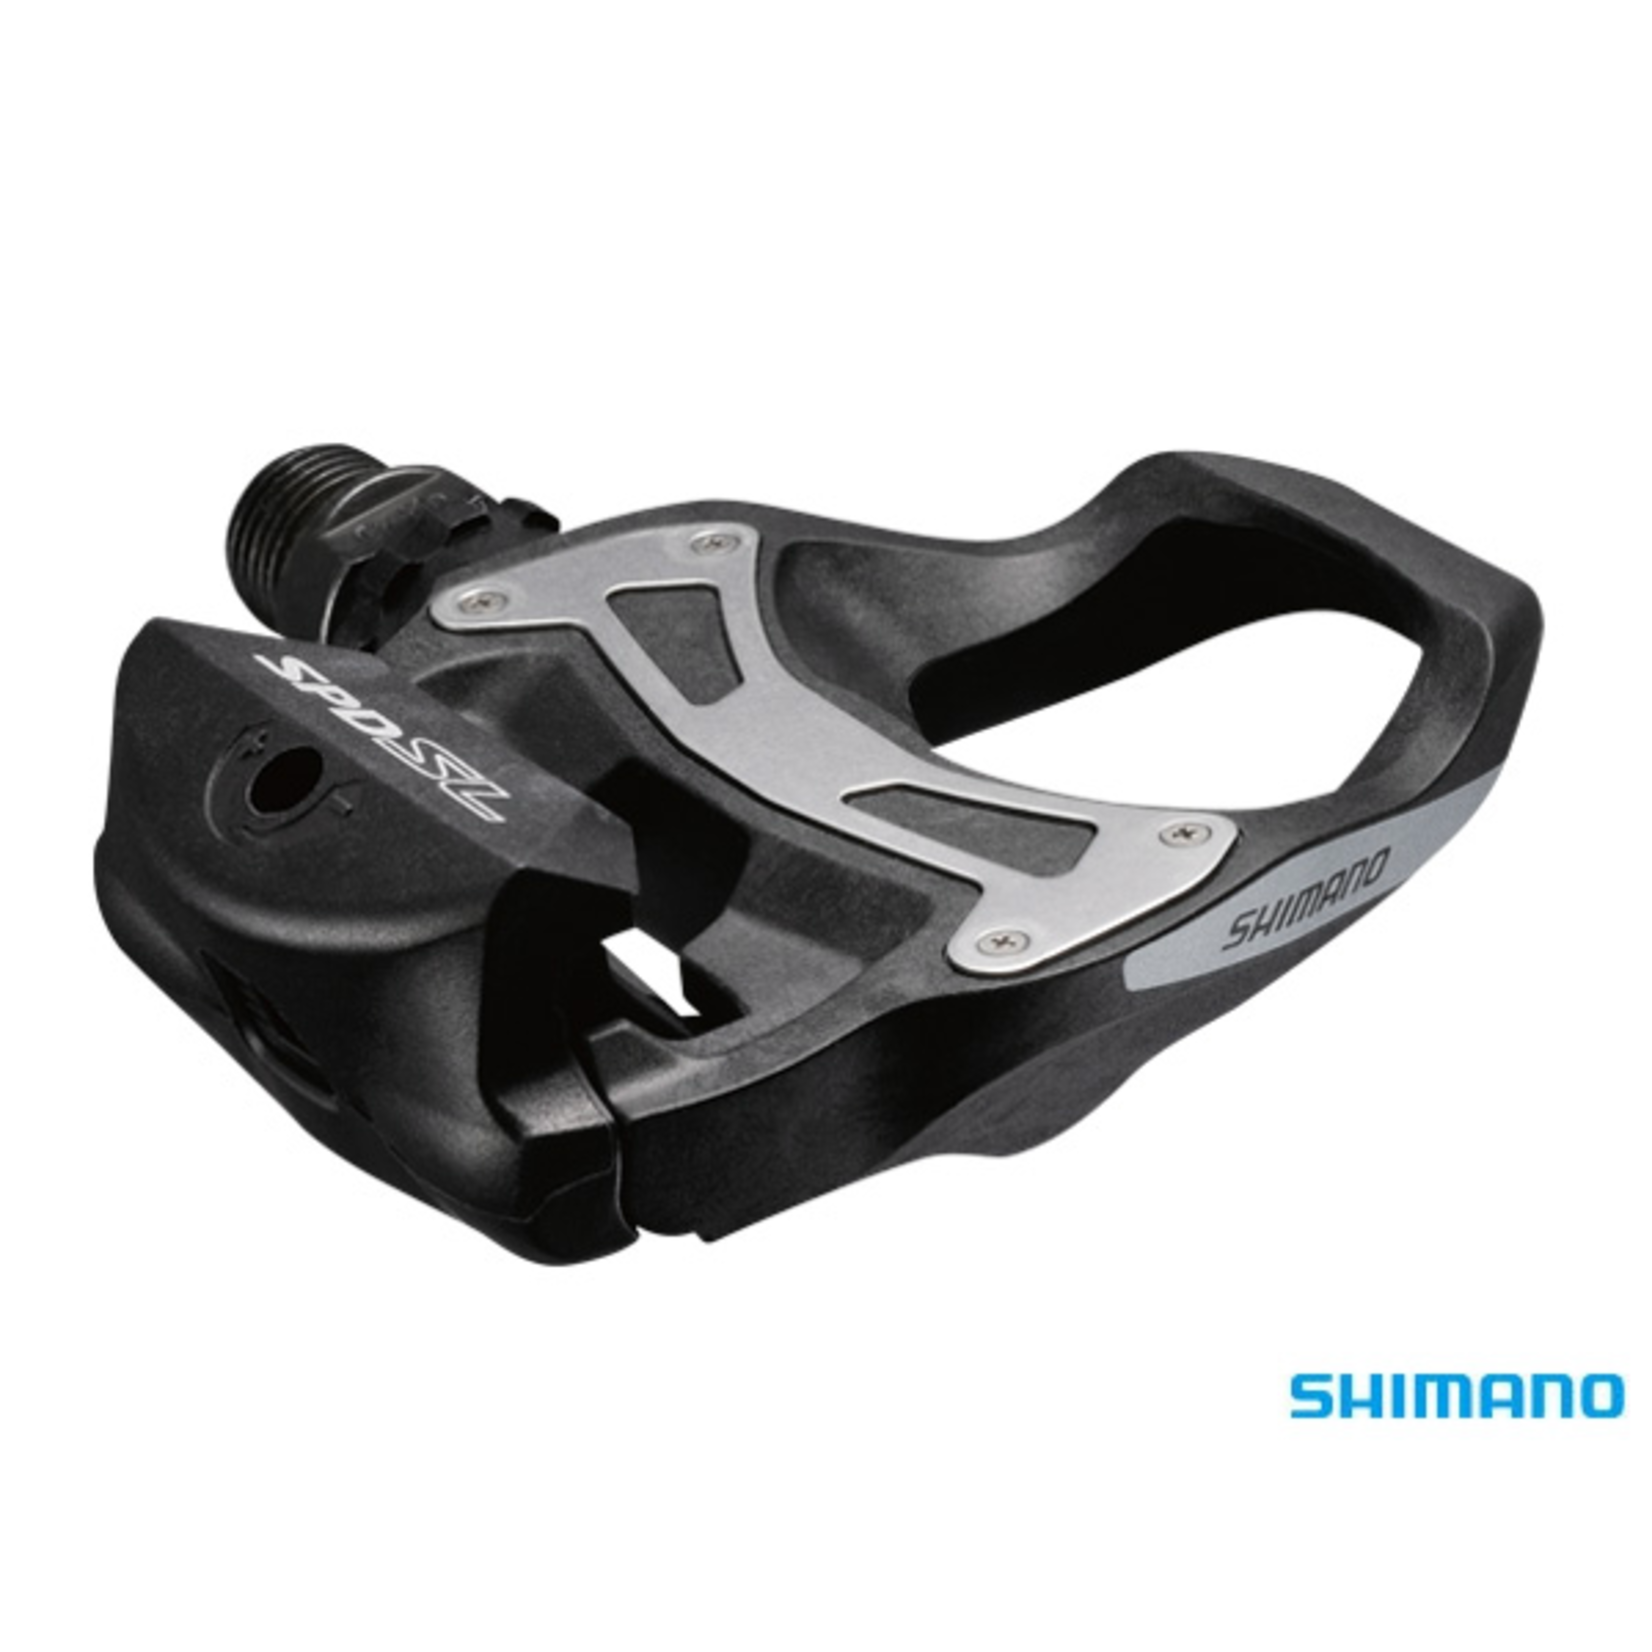 Shimano Shimano PD-R550 SPD-SL Pedals Black